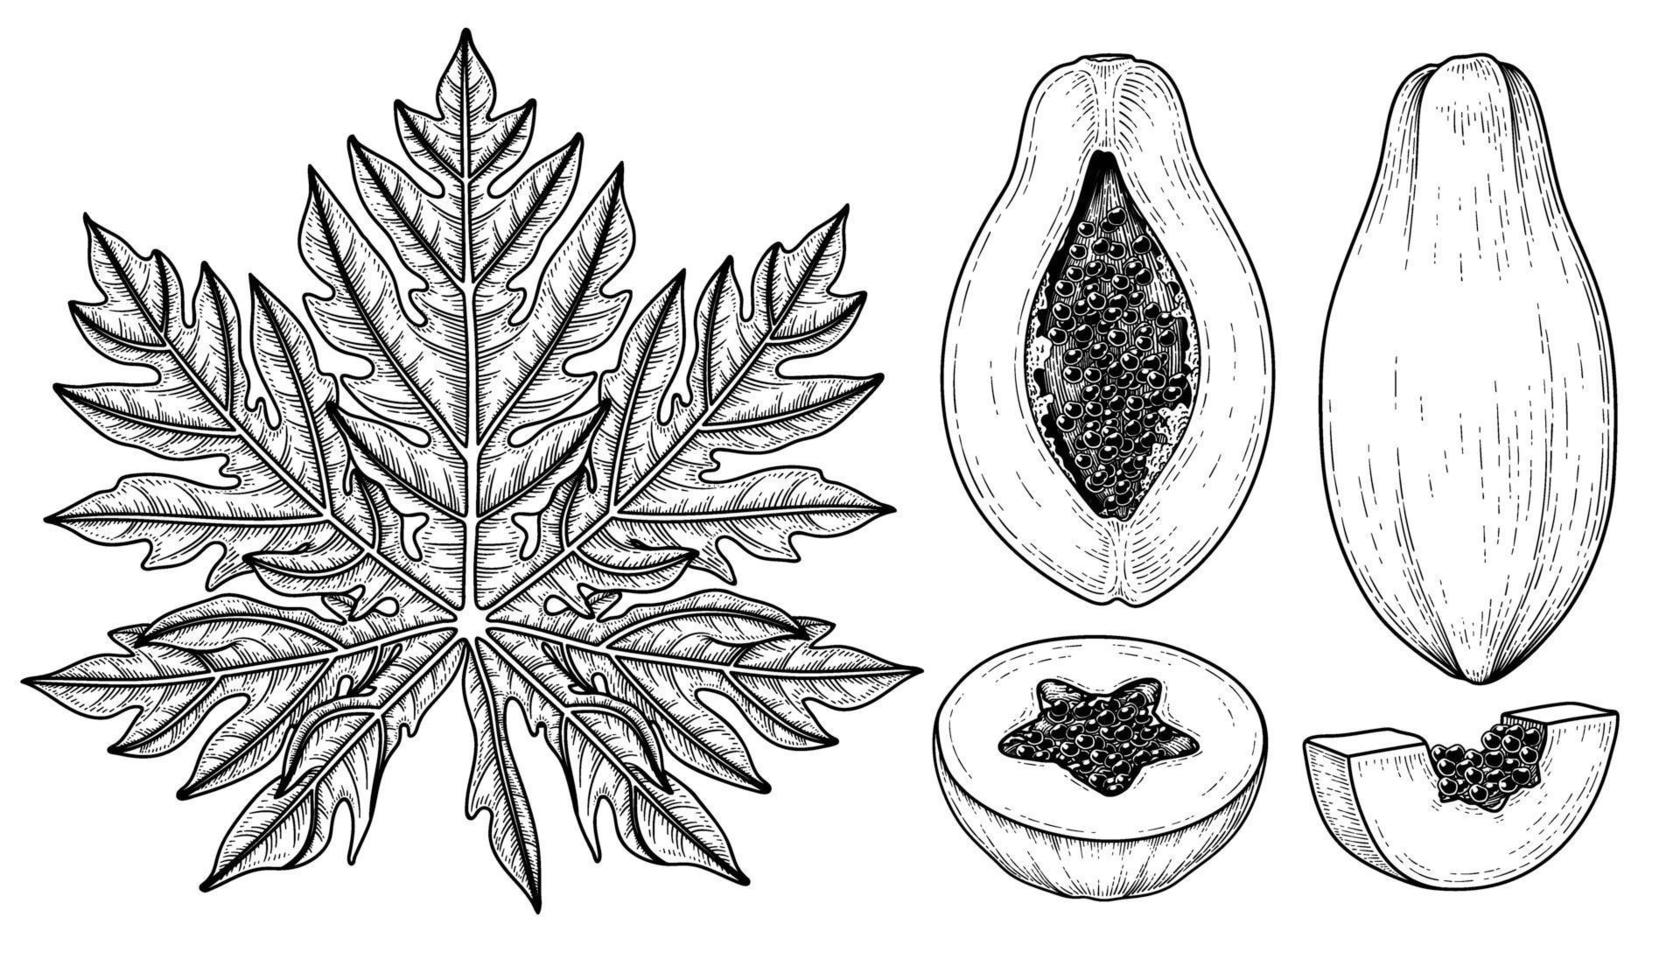 Satz gezeichnete Elemente der Papaya-Fruchthand gezeichnete botanische Illustration vektor